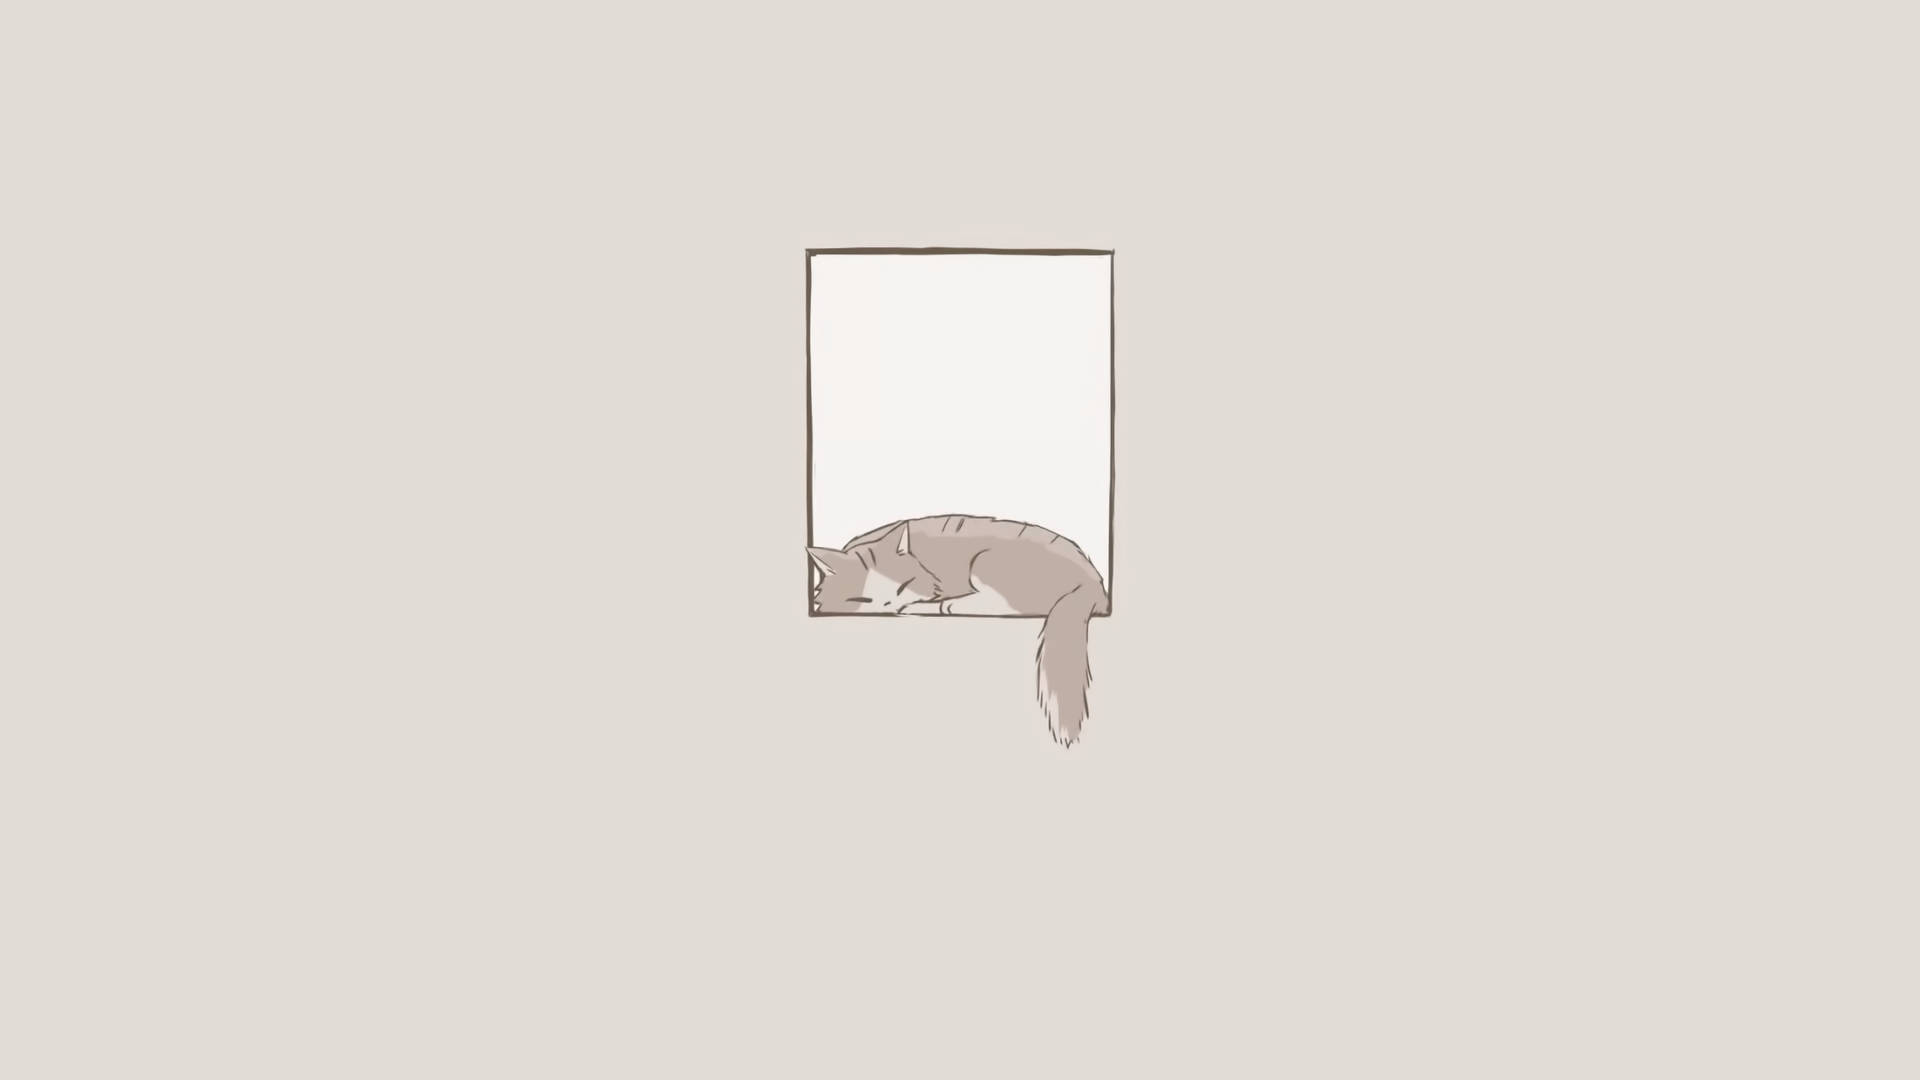 Minimalistic illustration of a cat in a window sill - Minimalist